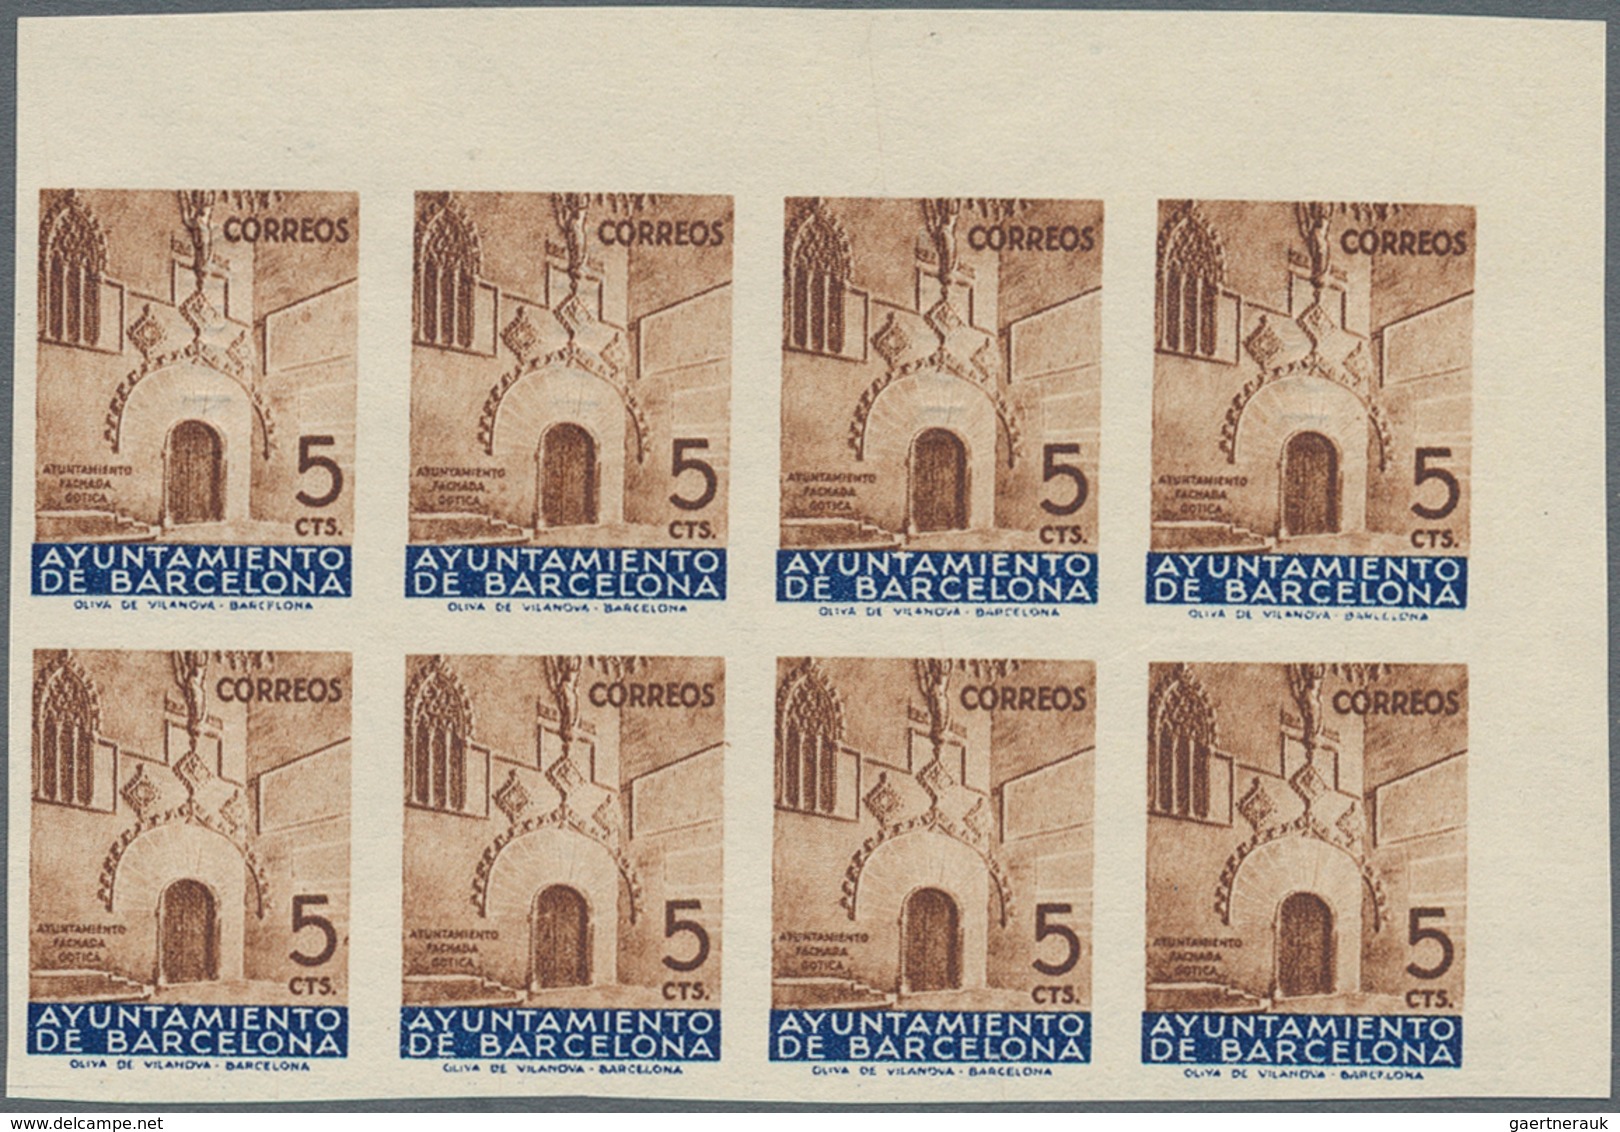 Spanien - Zwangszuschlagsmarken für Barcelona: 1929/1945, enormous accumulation in carton with many